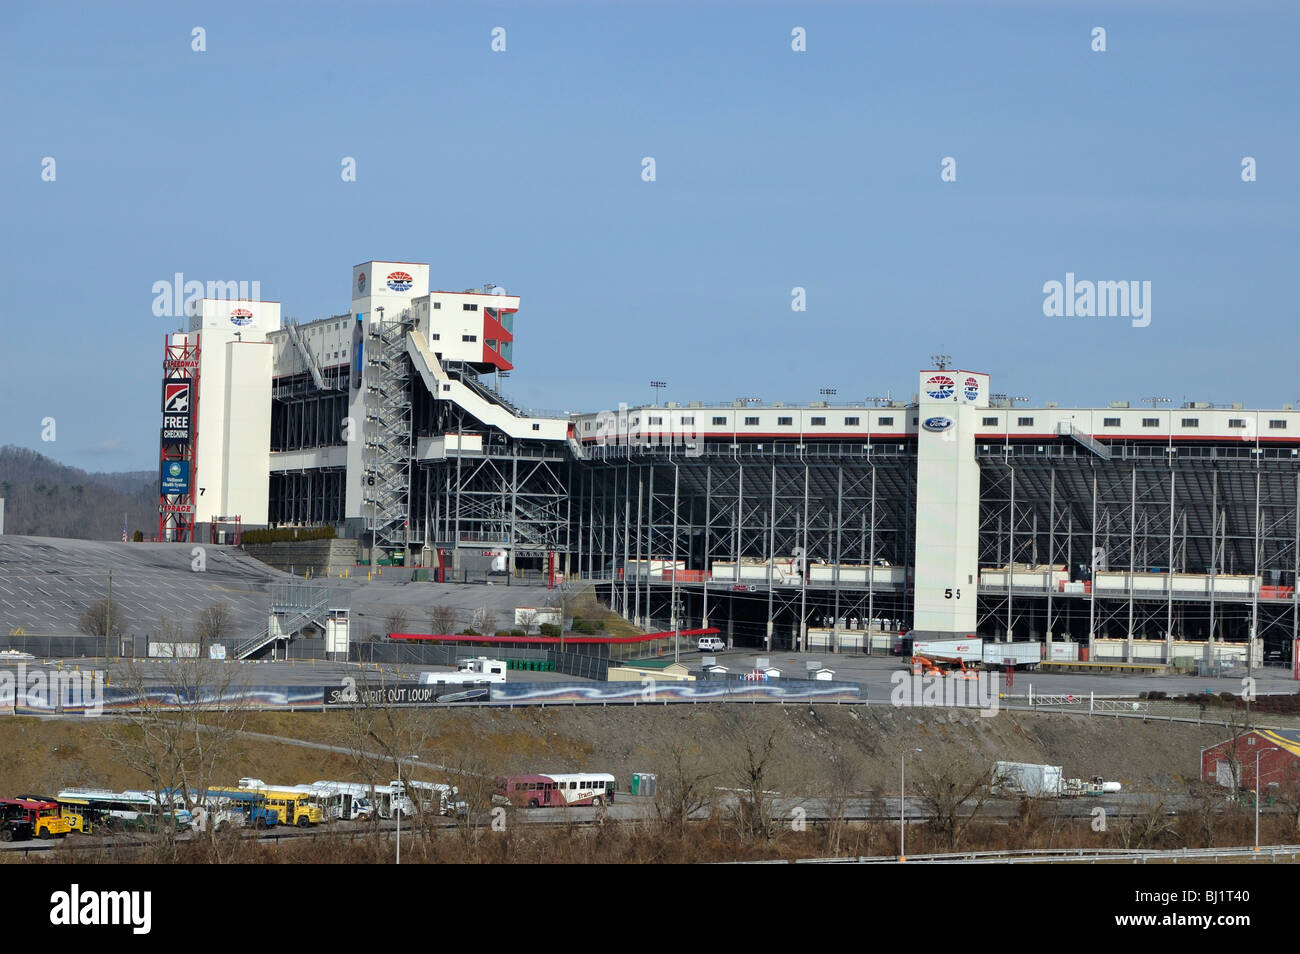 Bristol Motor Speedway in Bristol, Tennessee, USA Stock Photo